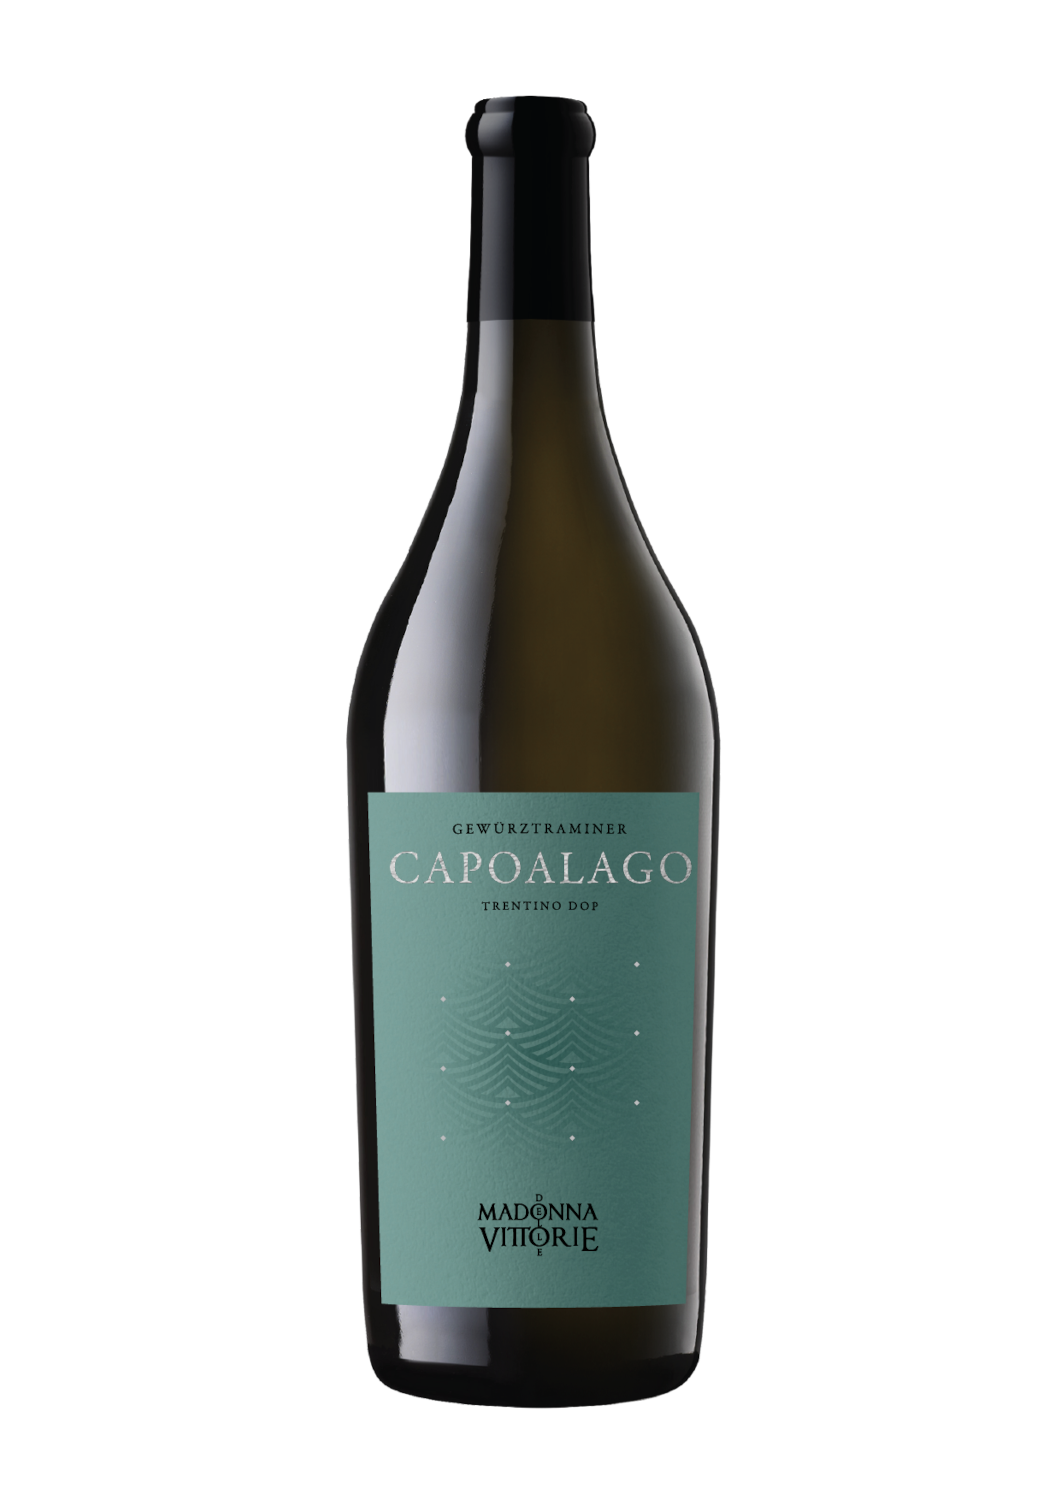 Capoalago - Gewürztraminer Trentino DOP